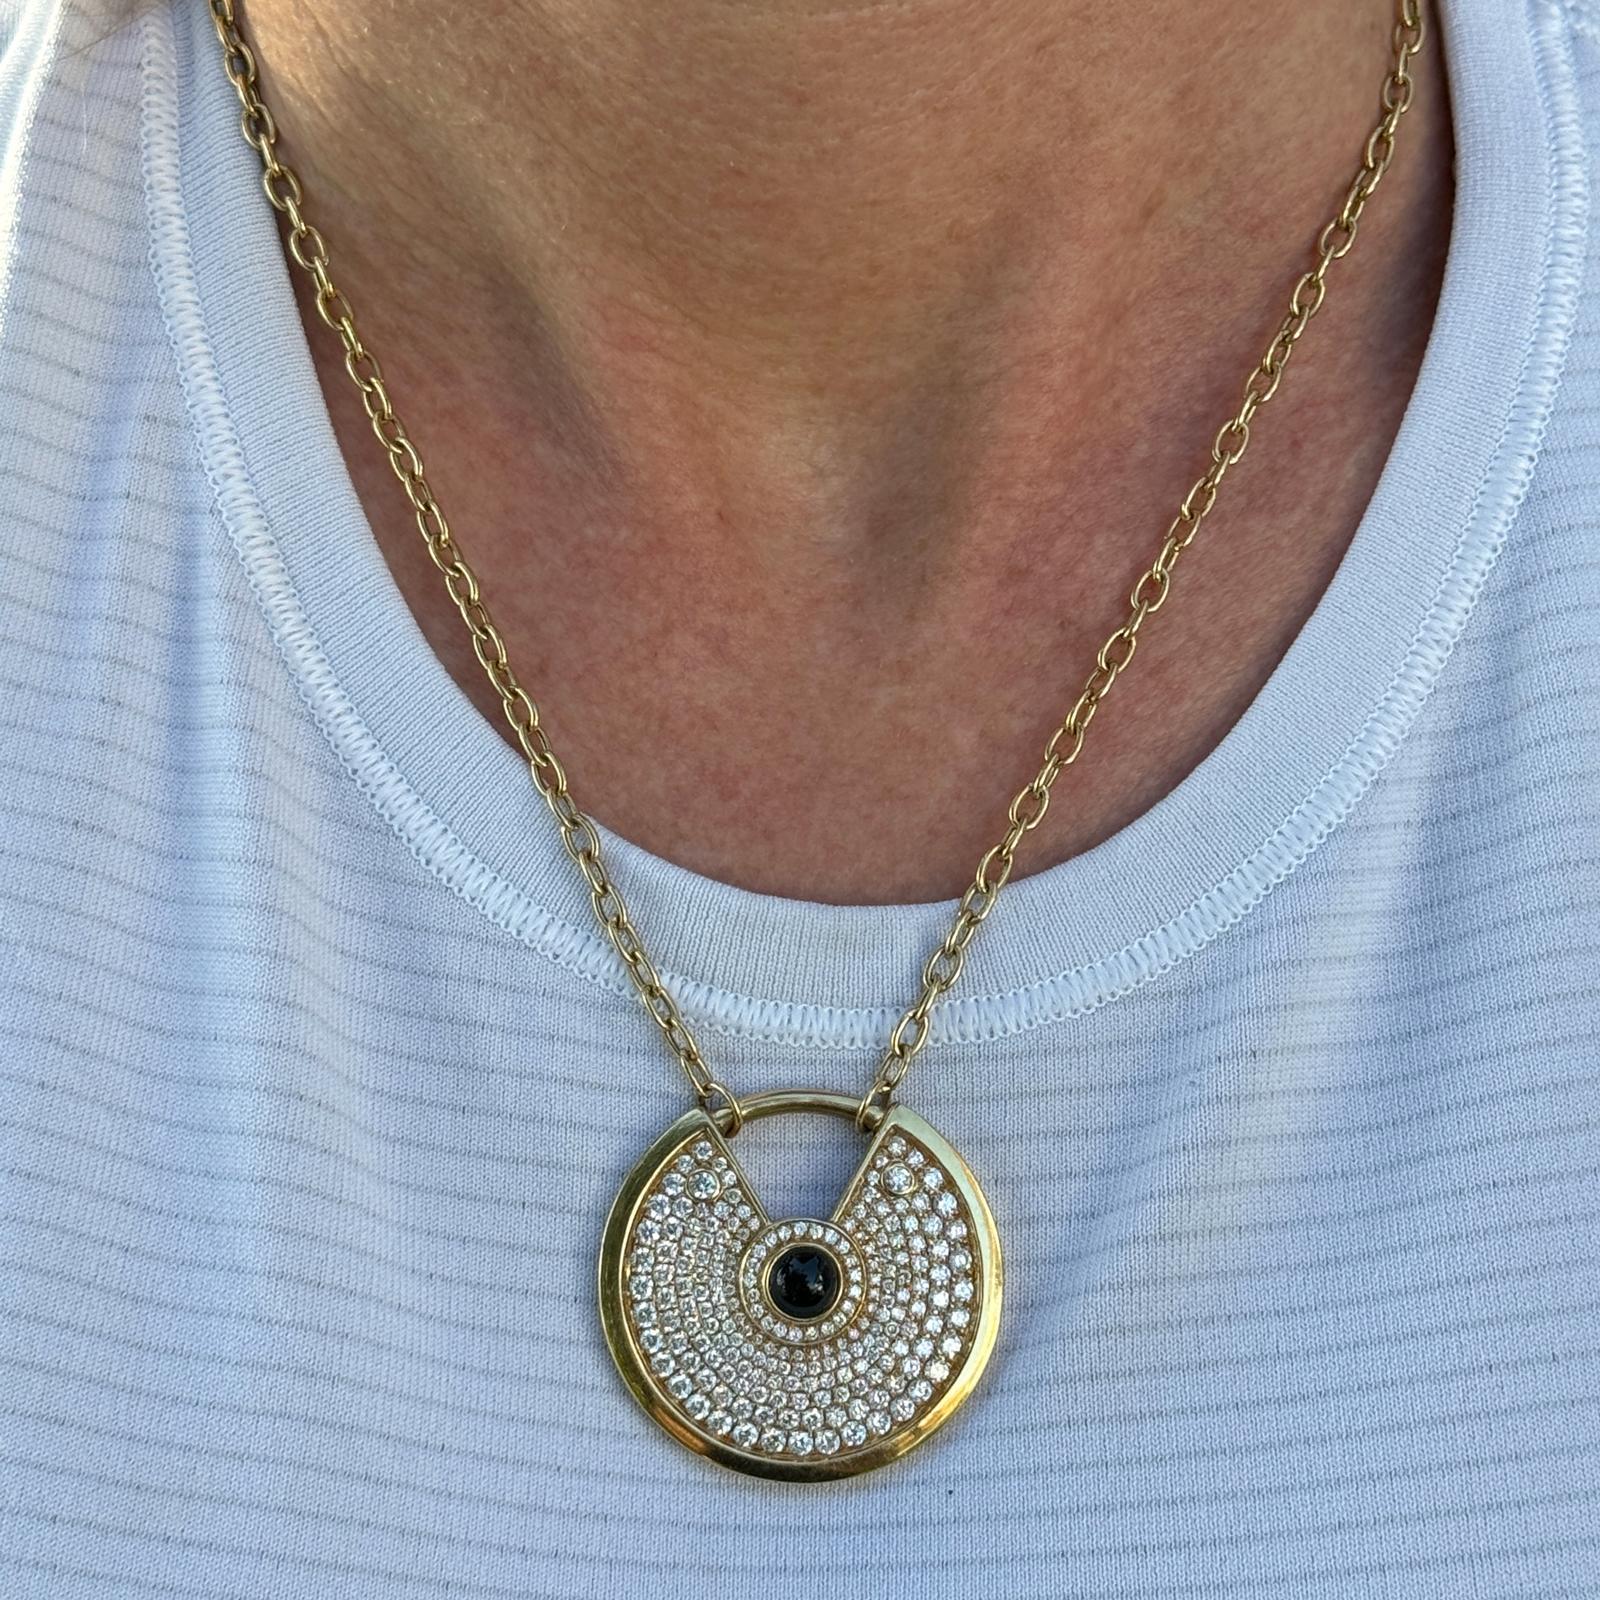 Die moderne Diamant-Onyx-Amulett-Halskette aus 18 Karat Gelbgold ist ein modernes und stilvolles Schmuckstück, das Luxus mit Symbolik verbindet. Der Anhänger ist eine moderne Interpretation des traditionellen Amuletts oder Talismans, der Schutz,